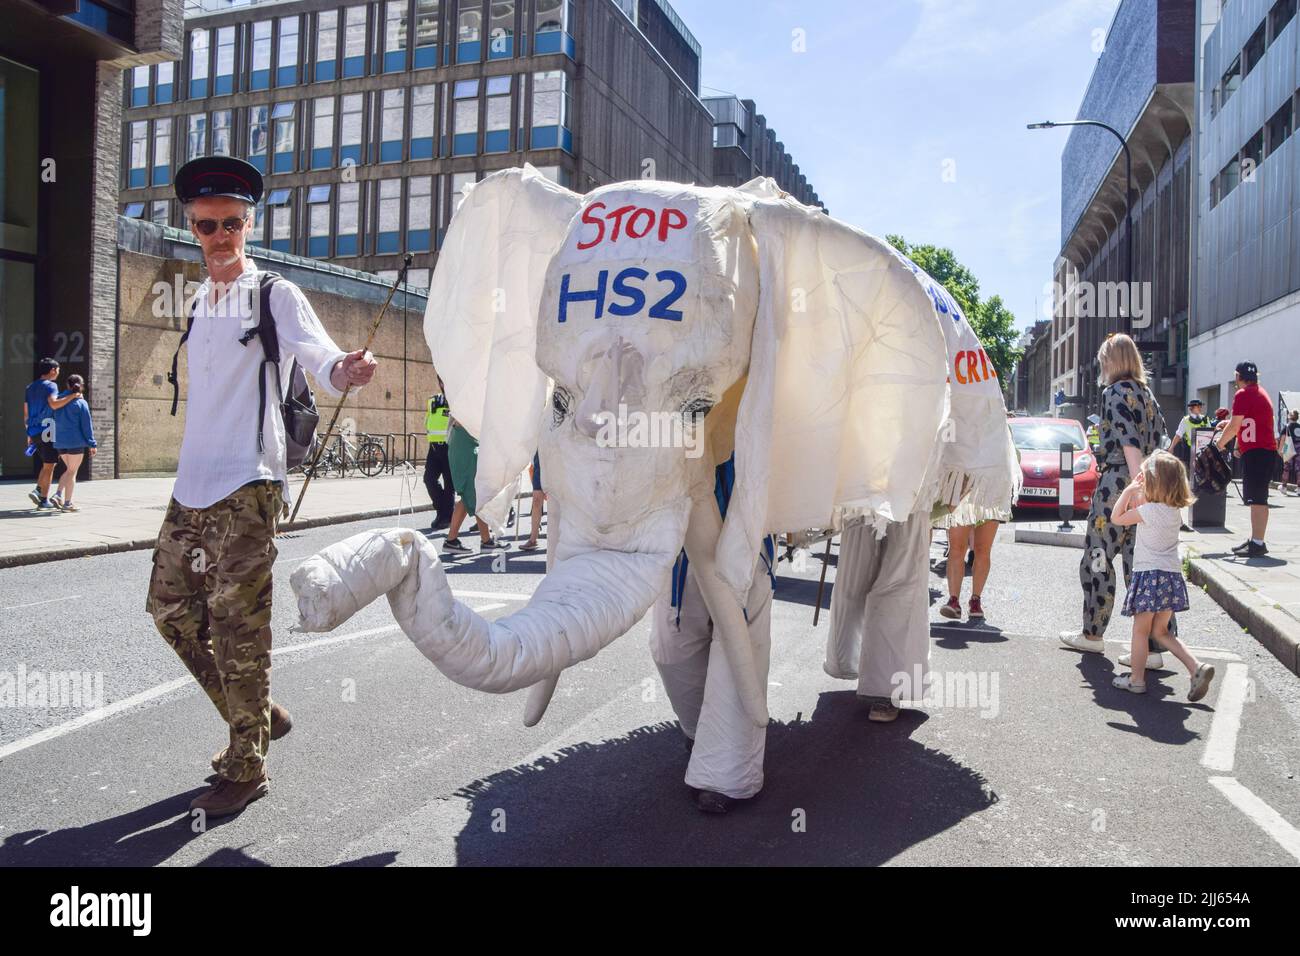 Londres, Inglaterra, Reino Unido. 23rd de julio de 2022. Activistas vestidos de elefante blanco marchan contra la línea ferroviaria HS2 (Alta Velocidad 2). Los manifestantes de Just Stop Oil, Extinction Rebelion, aislar a Gran Bretaña y otros grupos organizaron una marcha a través del centro de Londres pidiendo al gobierno que ponga fin a los combustibles fósiles, que graven a los grandes contaminadores y multimillonarios, que proporcionen aislamiento a todos los hogares y actúen sobre el clima y el costo de las crisis de vida. (Imagen de crédito: © Vuk Valcic/ZUMA Press Wire) Foto de stock